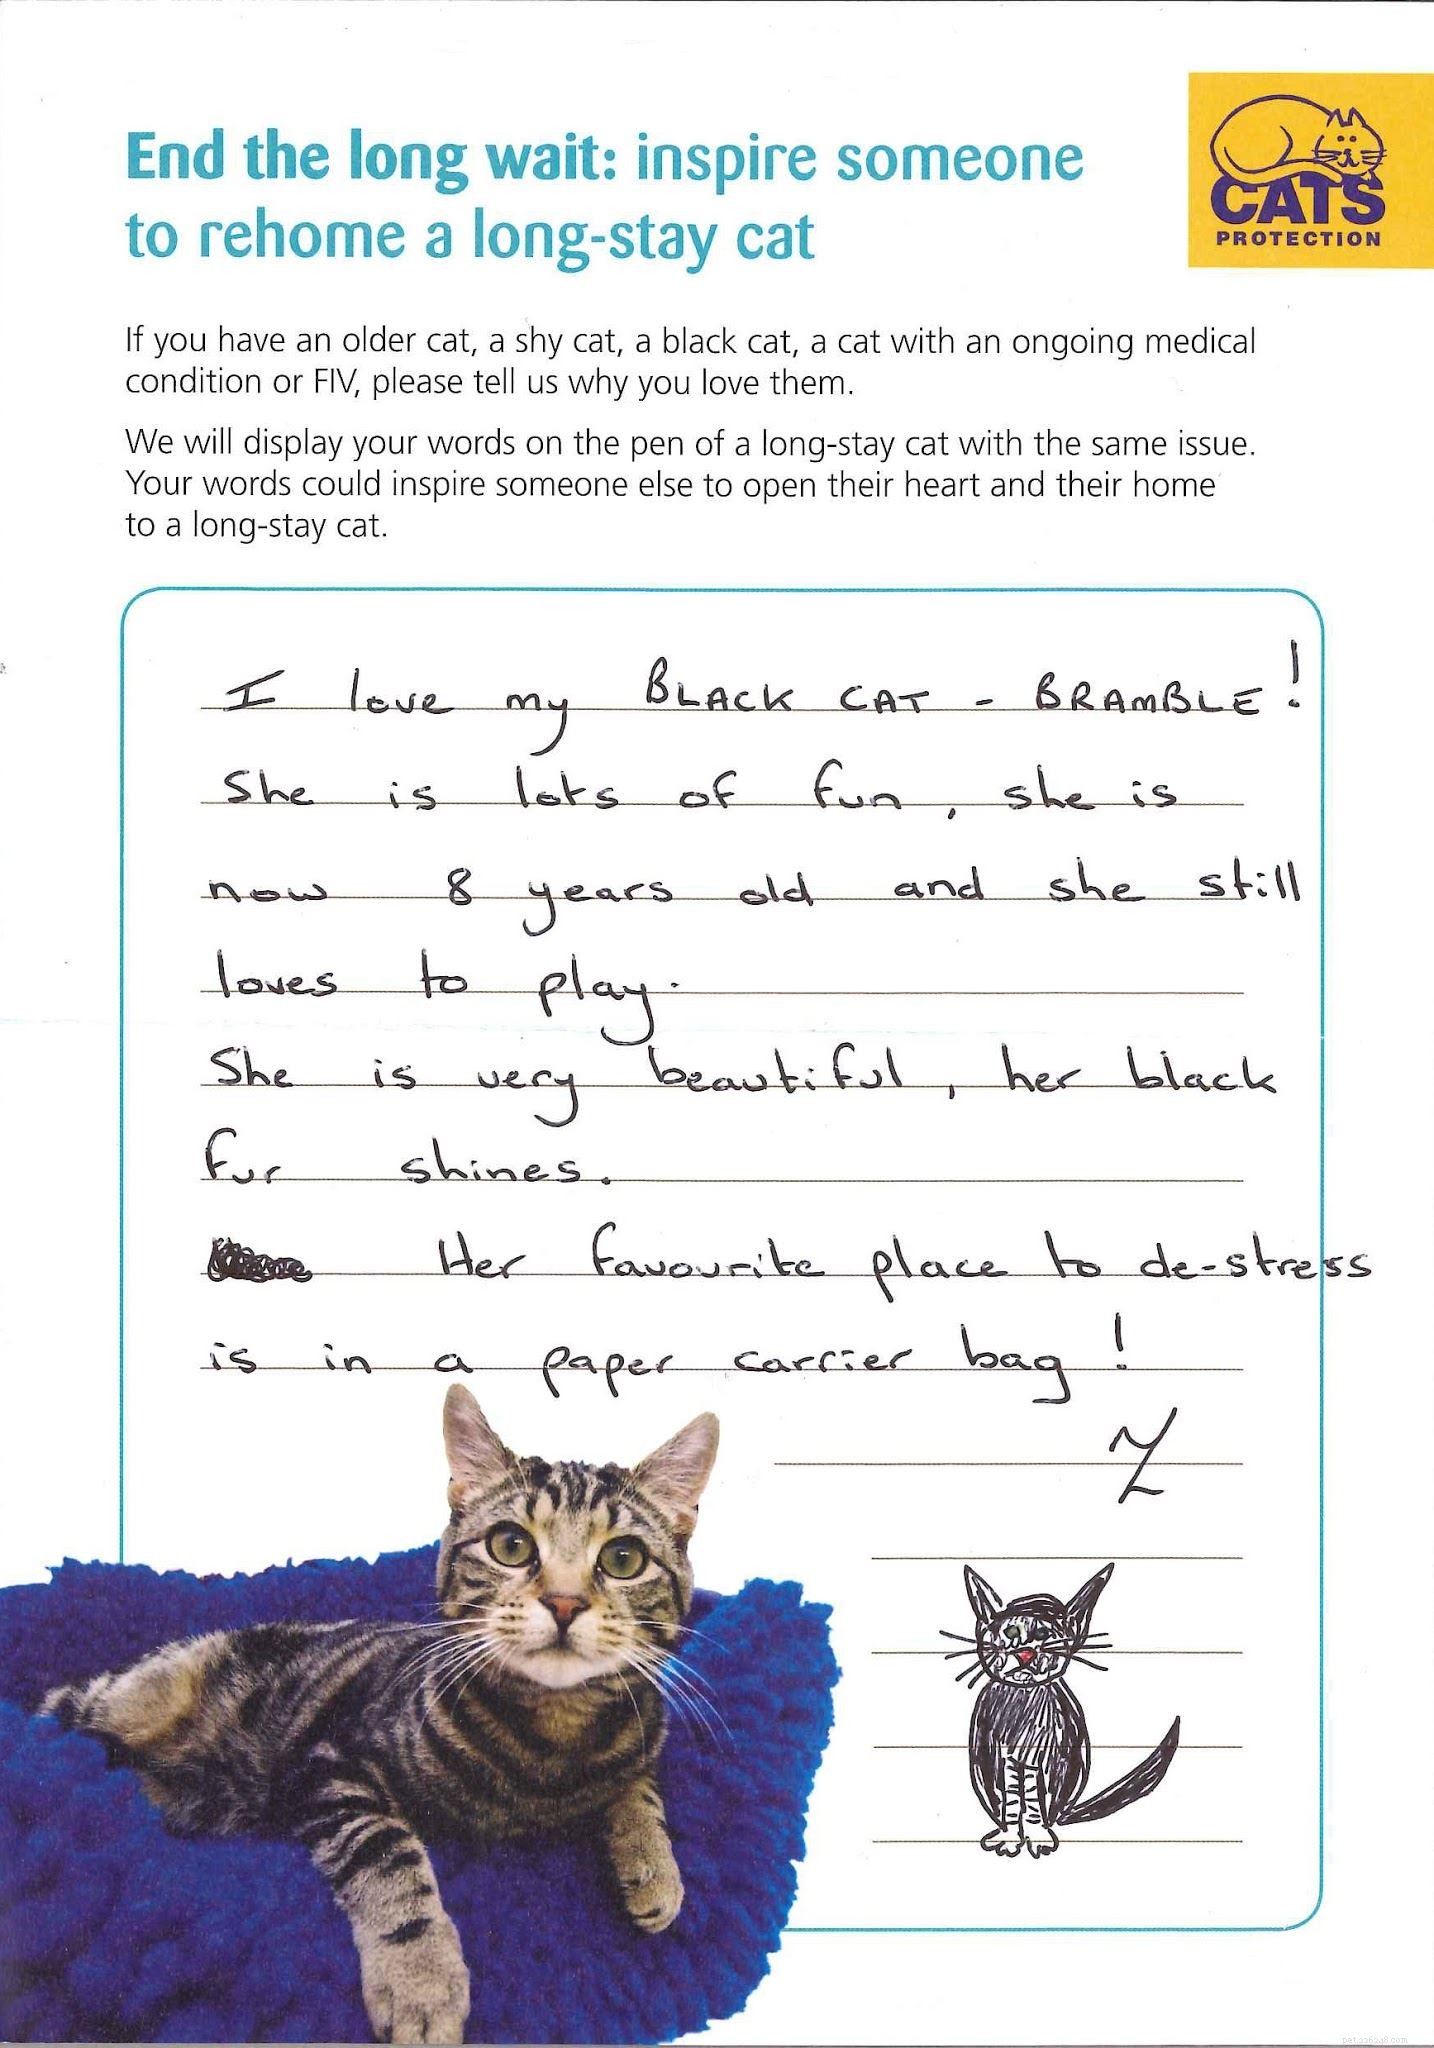 Dina berättelser om katter som varit i Cats Protections vård under en lång tid men nu är lyckligt bosatta hemma.